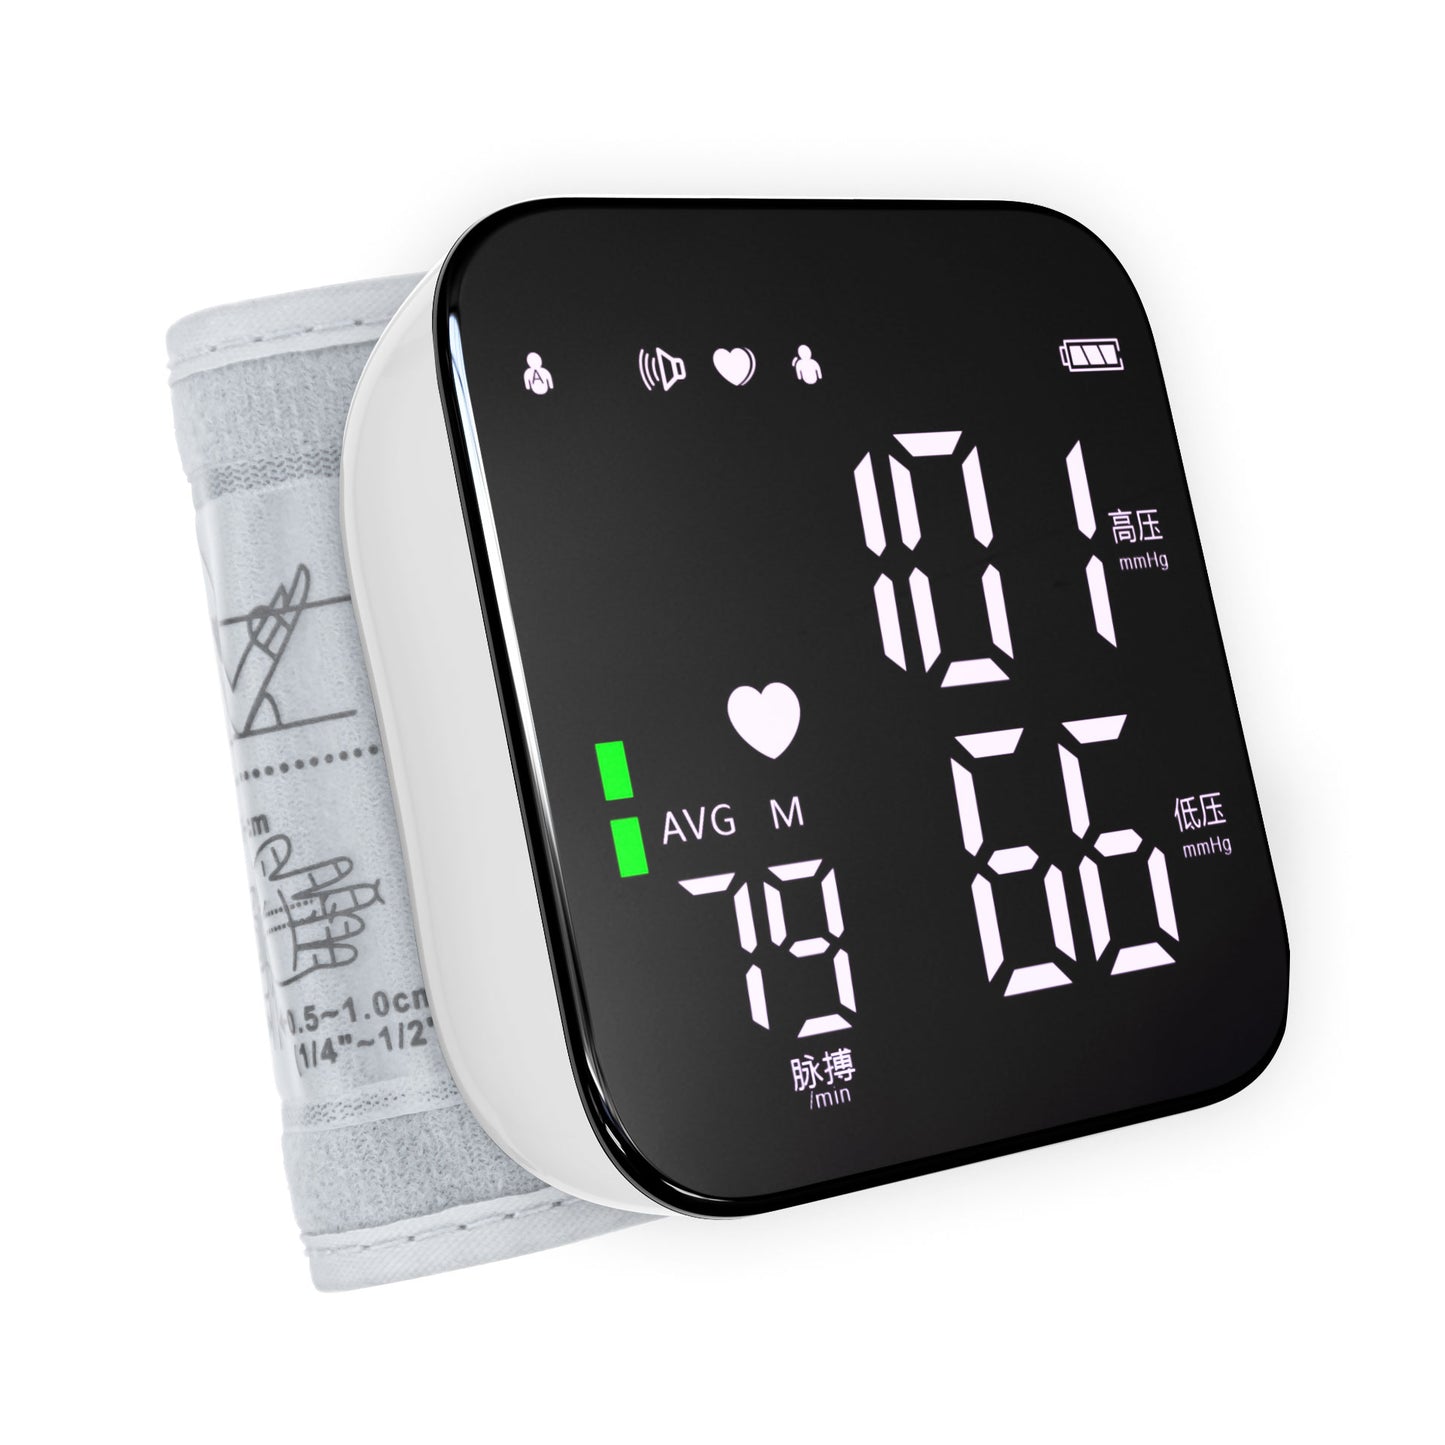 Digital Wrist blood pressure meter BP monitor mini sphygmomanometer